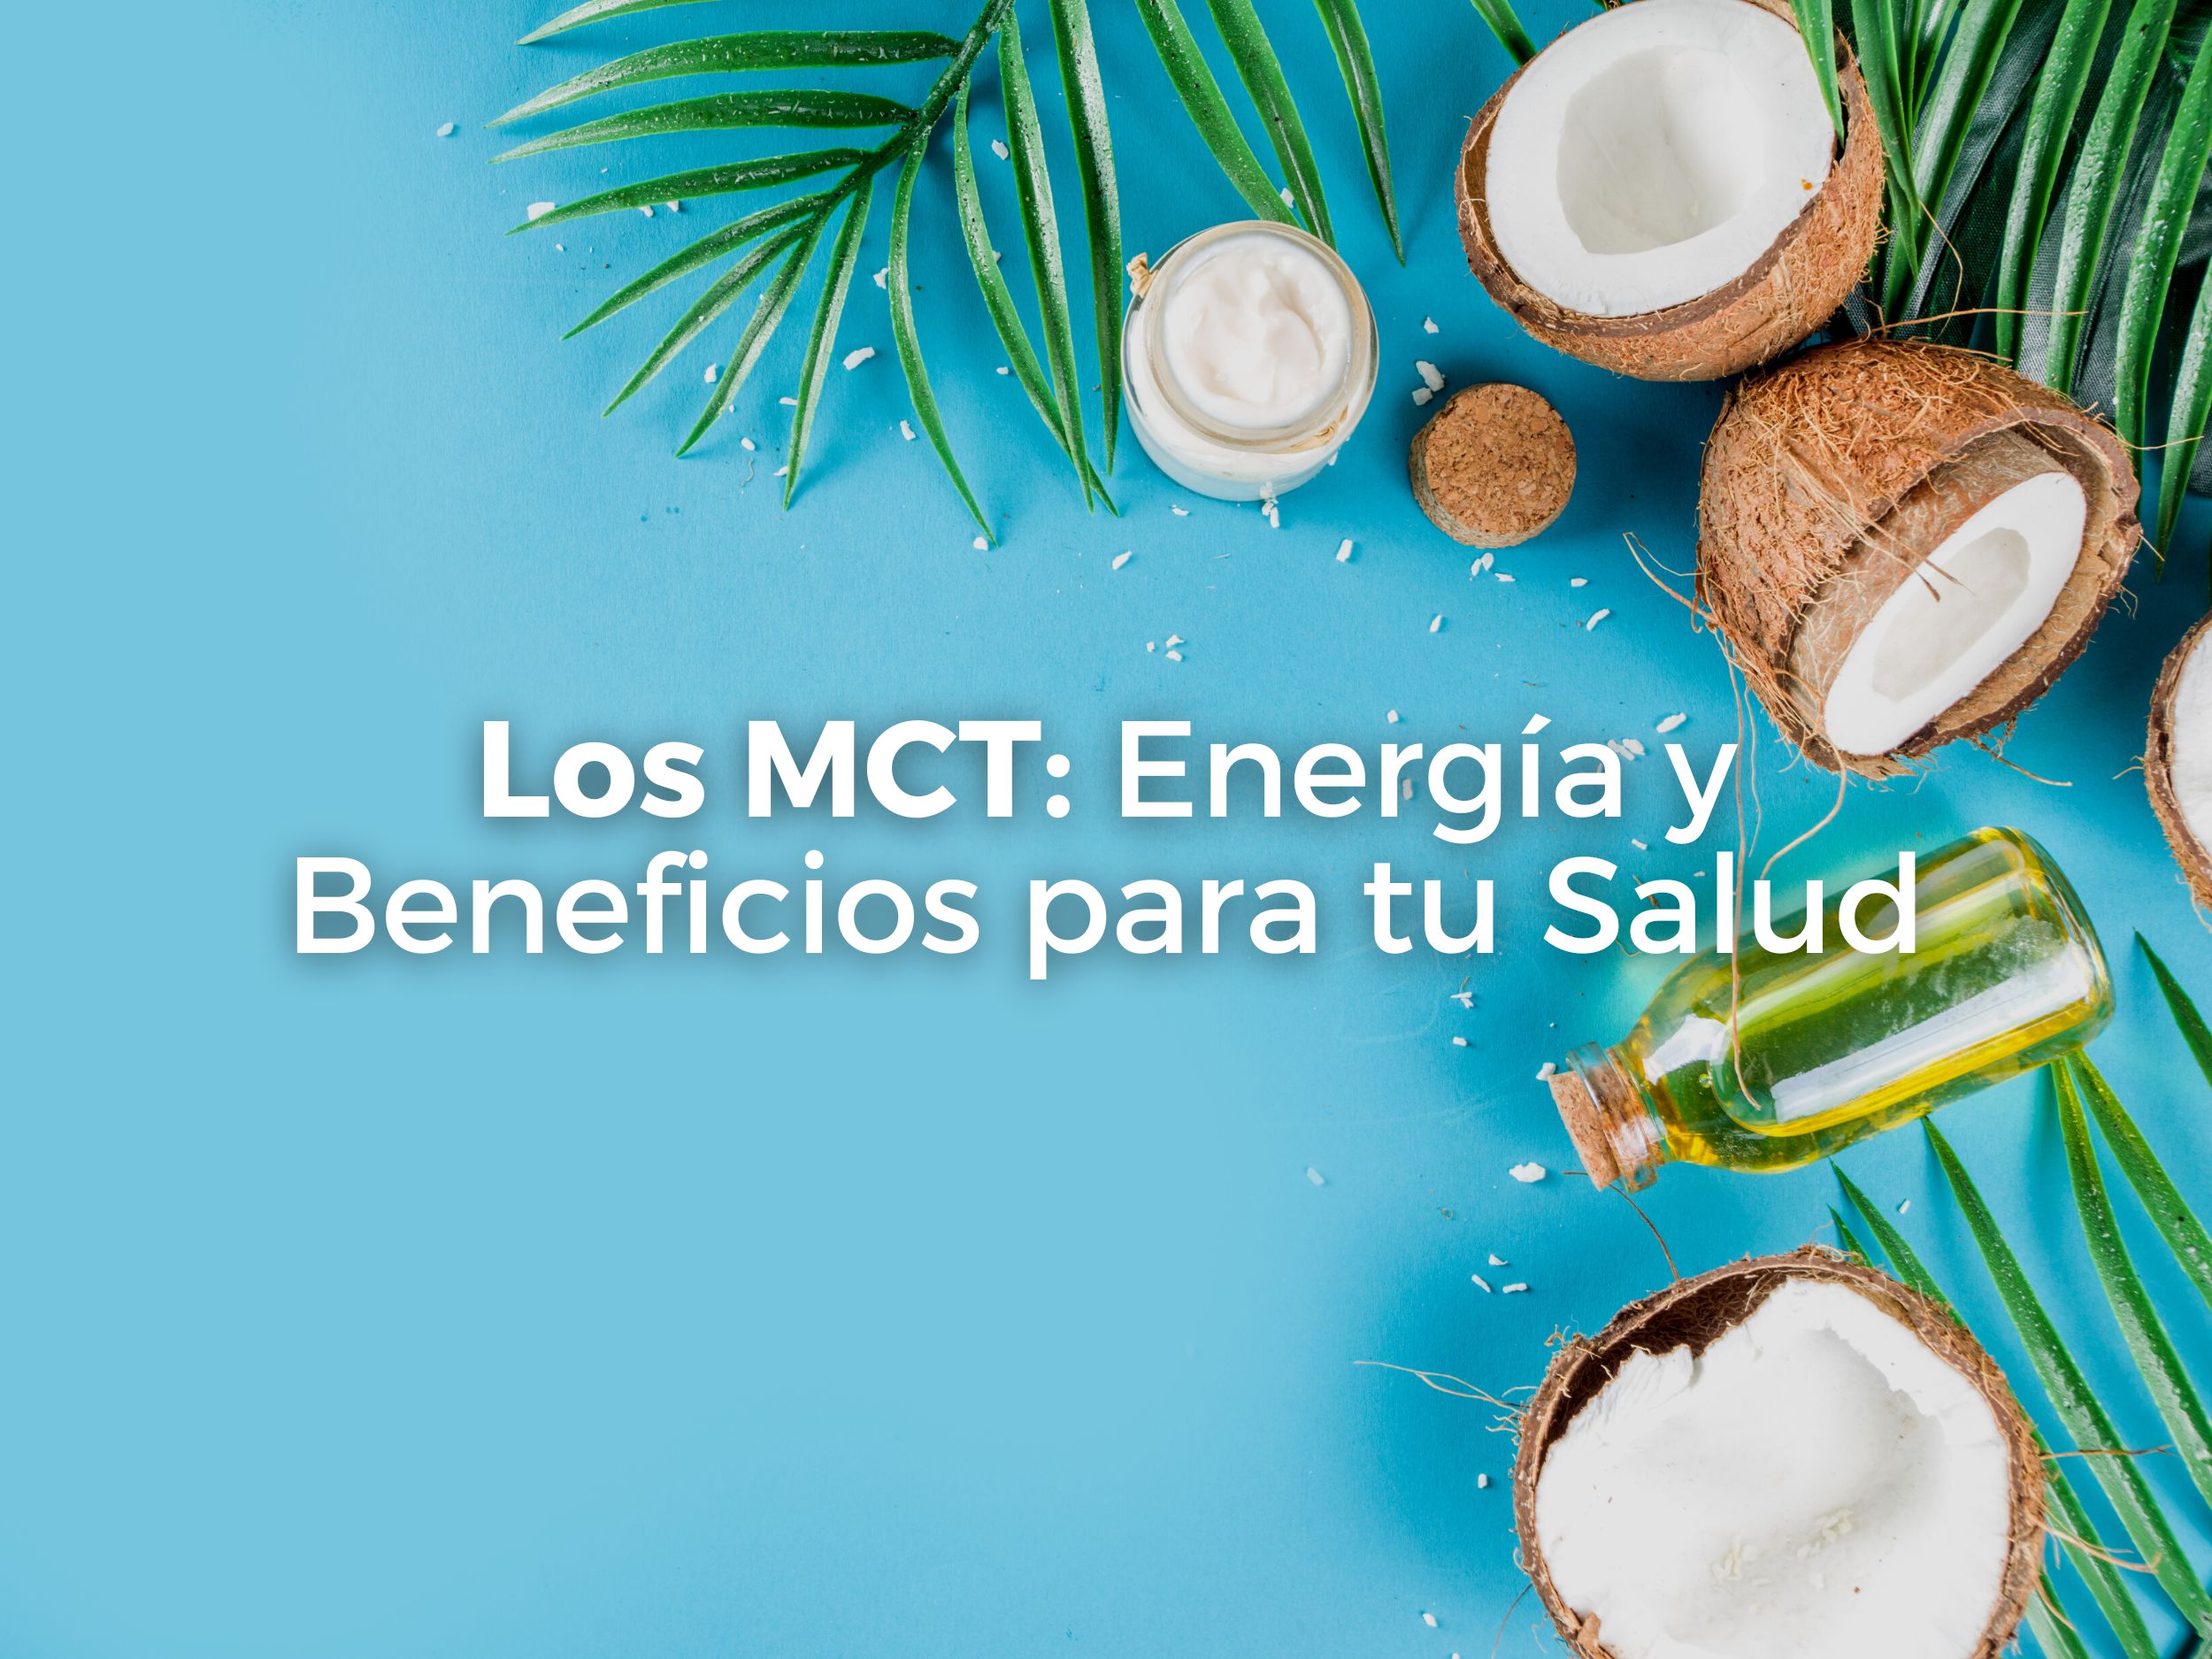 Los MCT: Energía y Beneficios para tu Salud